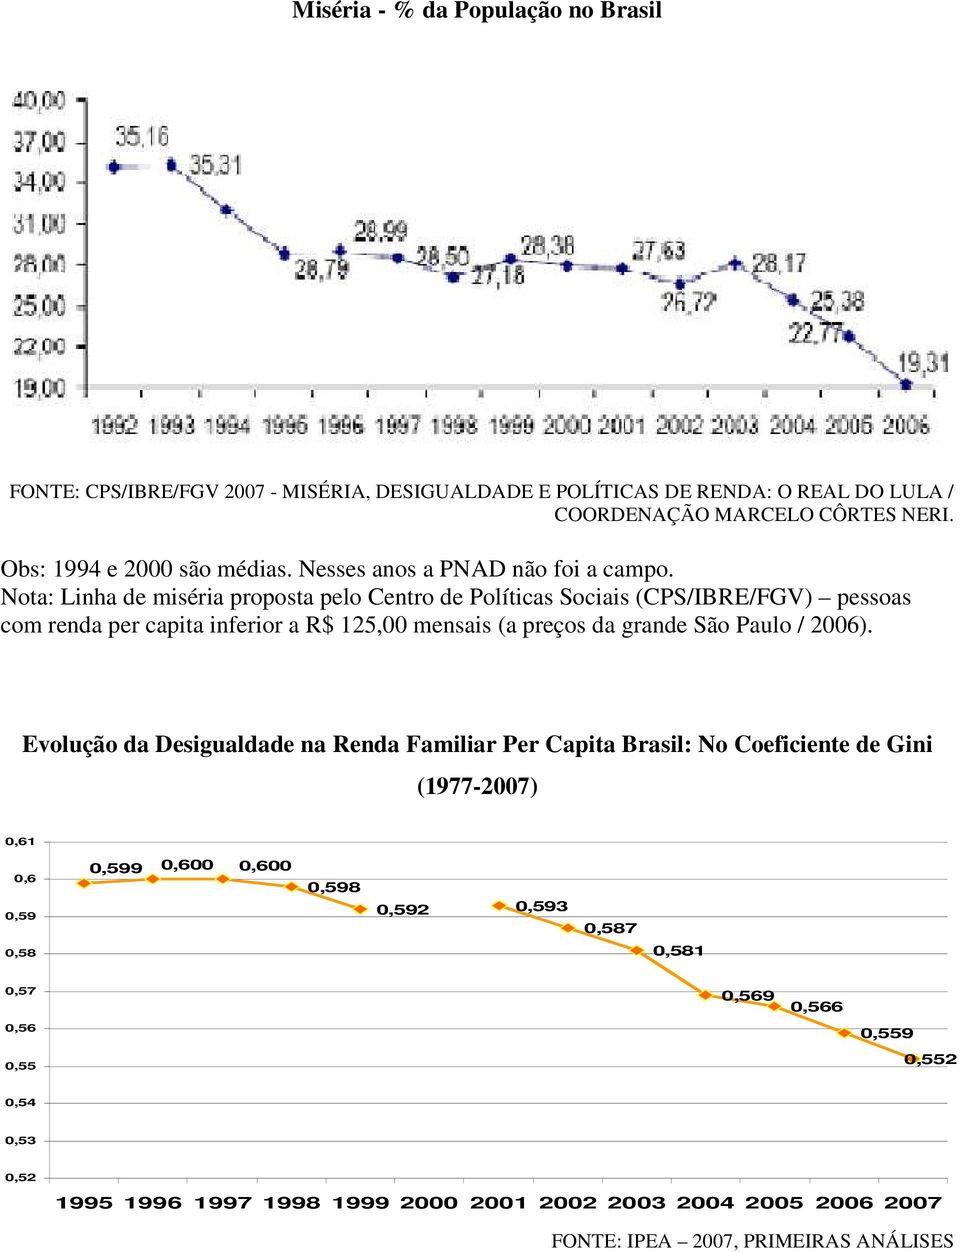 Nota: Linha de miséria proposta pelo Centro de Políticas Sociais (CPS/IBRE/FGV) pessoas com renda per capita inferior a R$ 125,00 mensais (a preços da grande São Paulo / 2006).